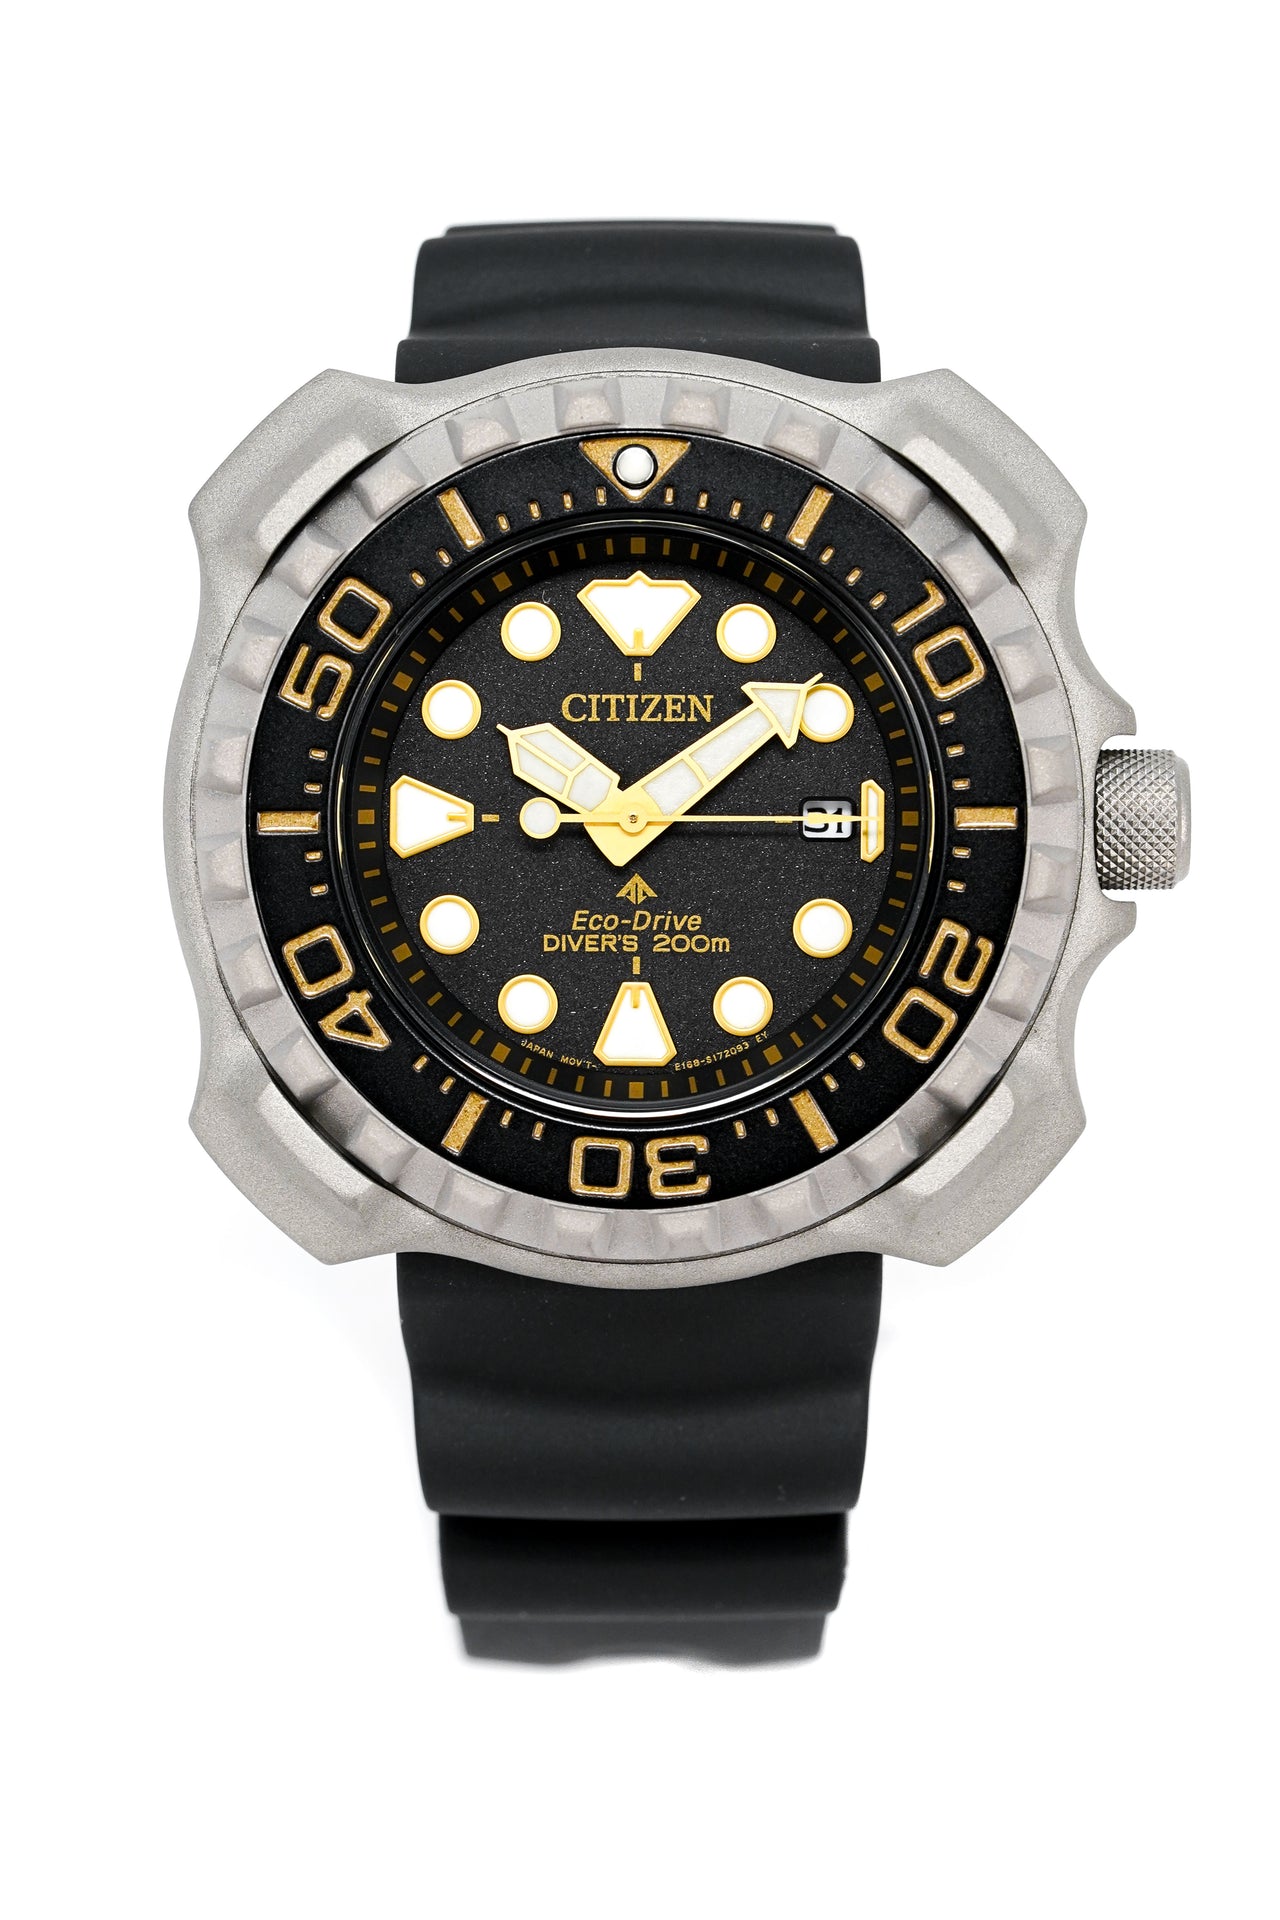 Citizen Eco-Drive Diver Marine Promaster Men's Watch Black BN0220-16E